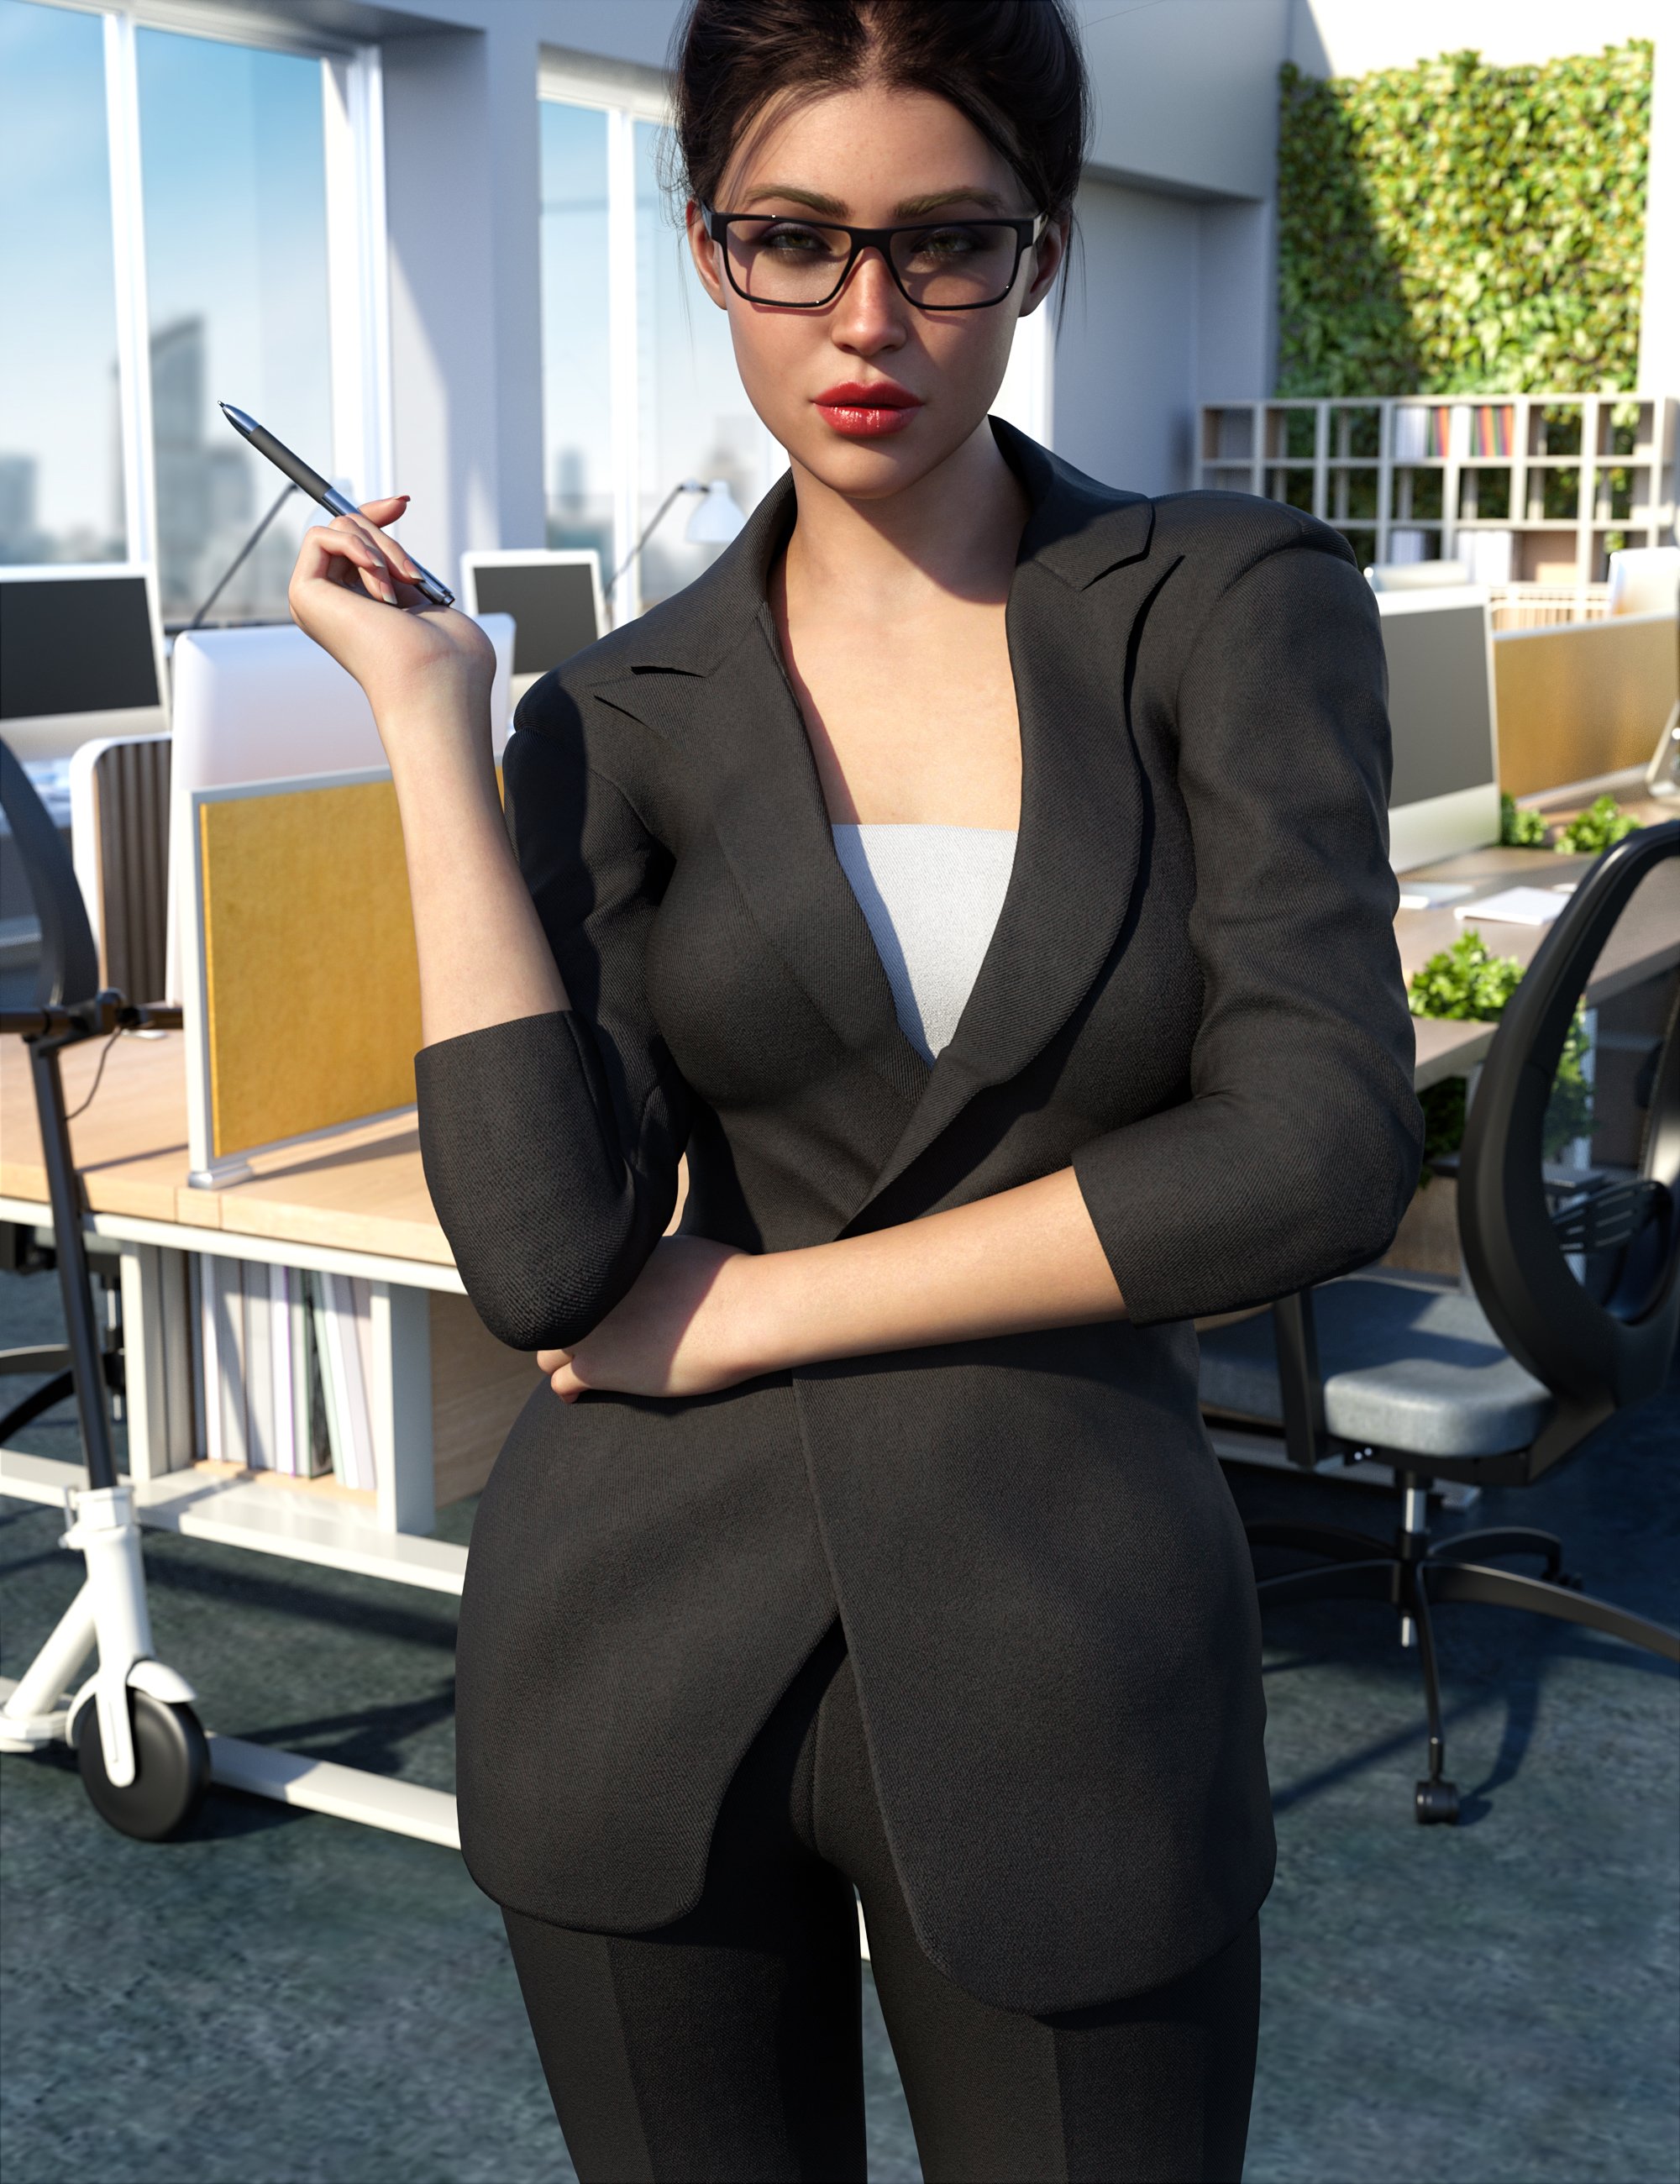 Z Professions Businesswoman Pose Mega Set by: Zeddicuss, 3D Models by Daz 3D